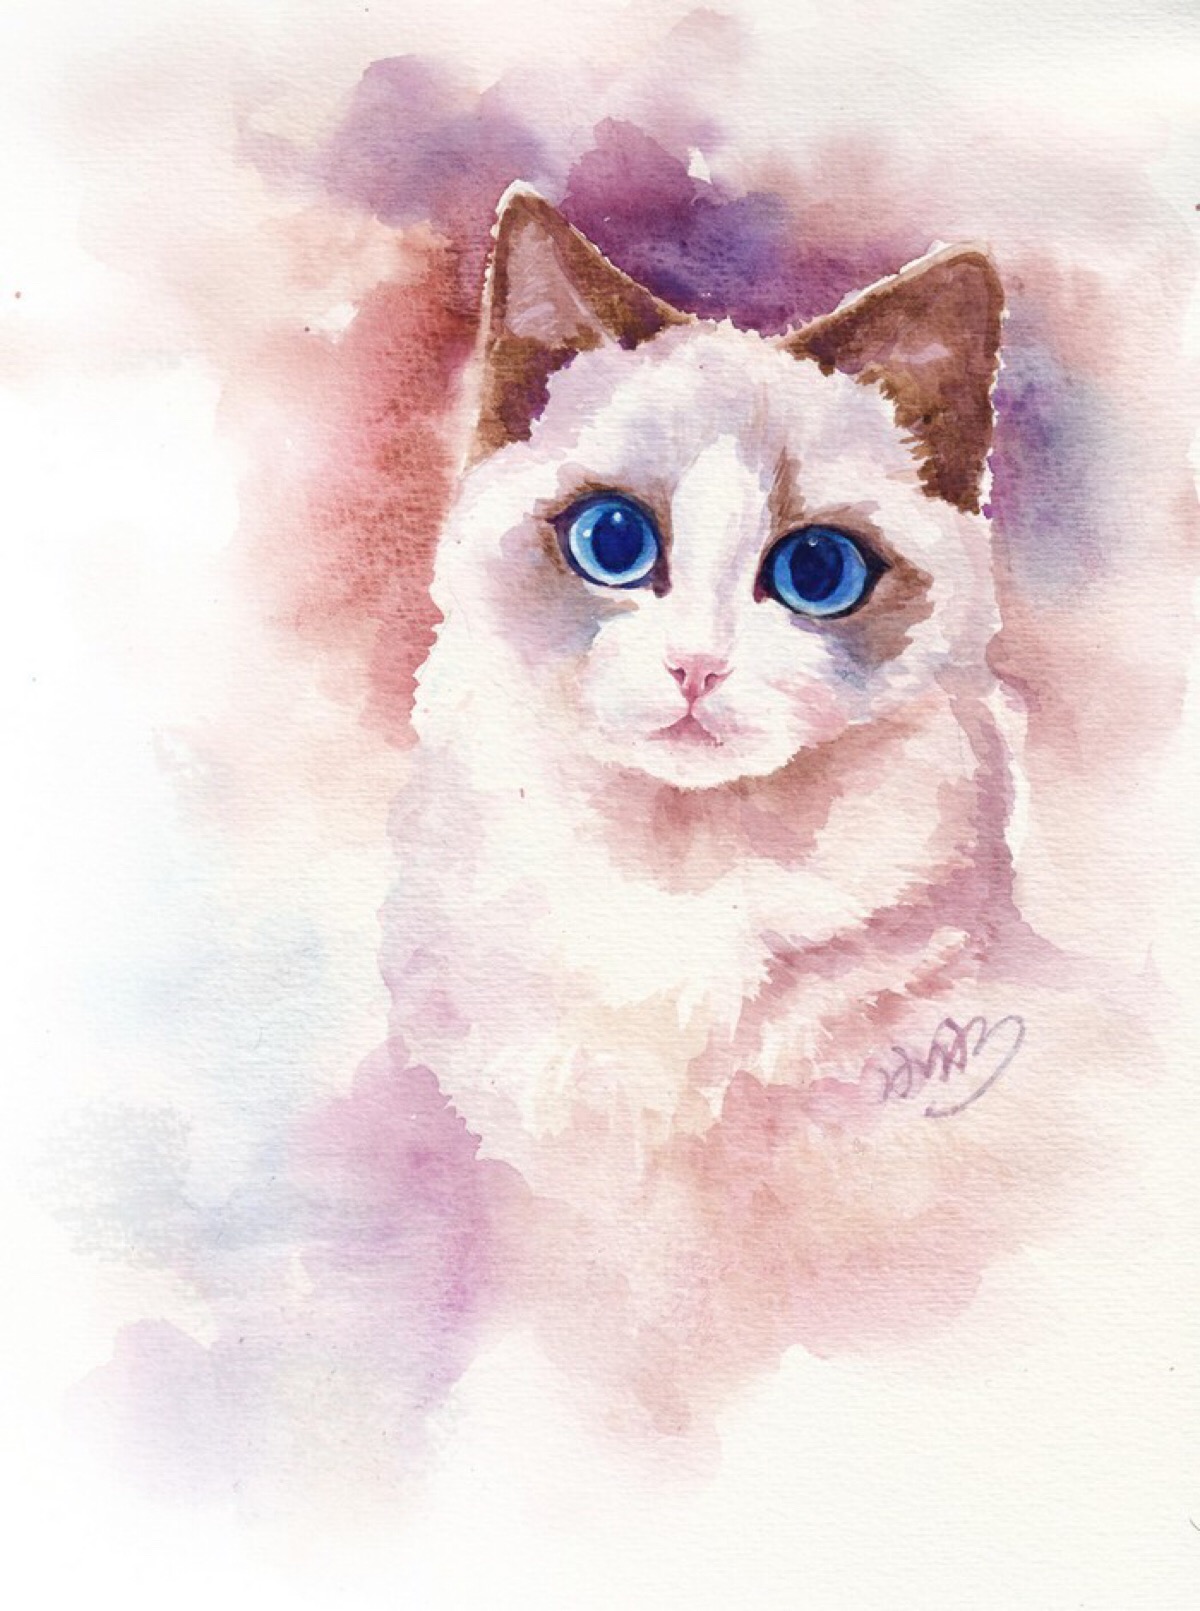 眼睛超美的猫咪手绘插画作品.